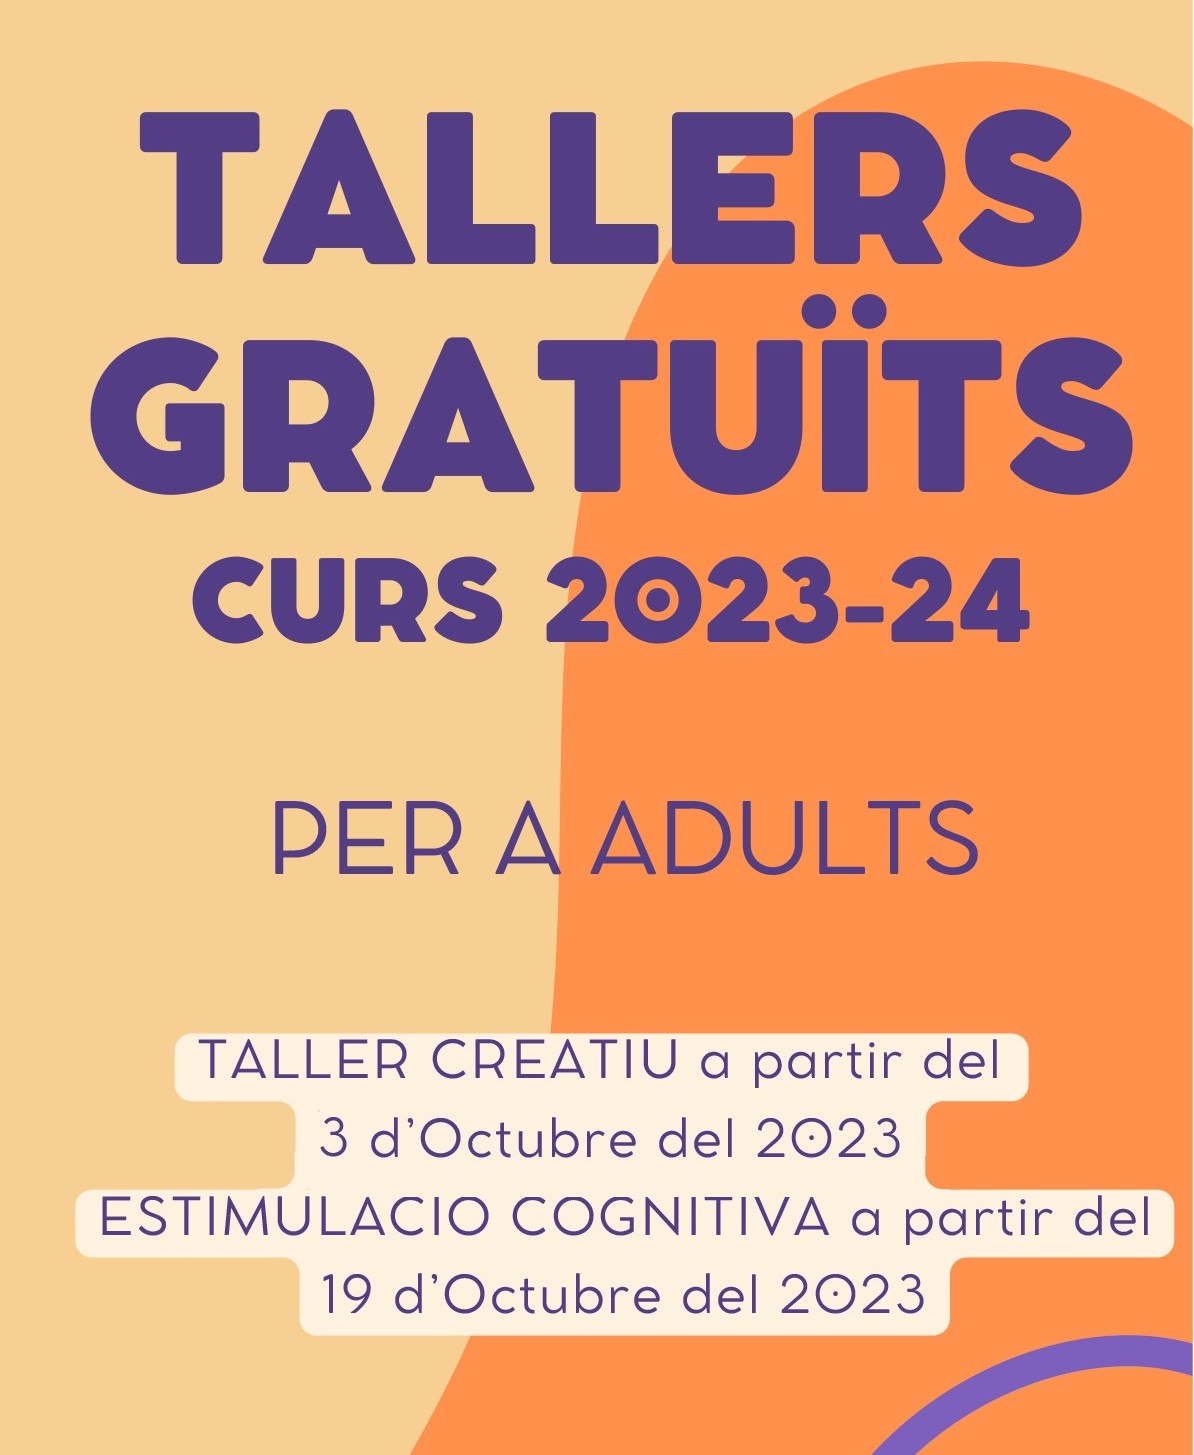 Tallers Gratuïts per a Adults: Inici del taller creatiu